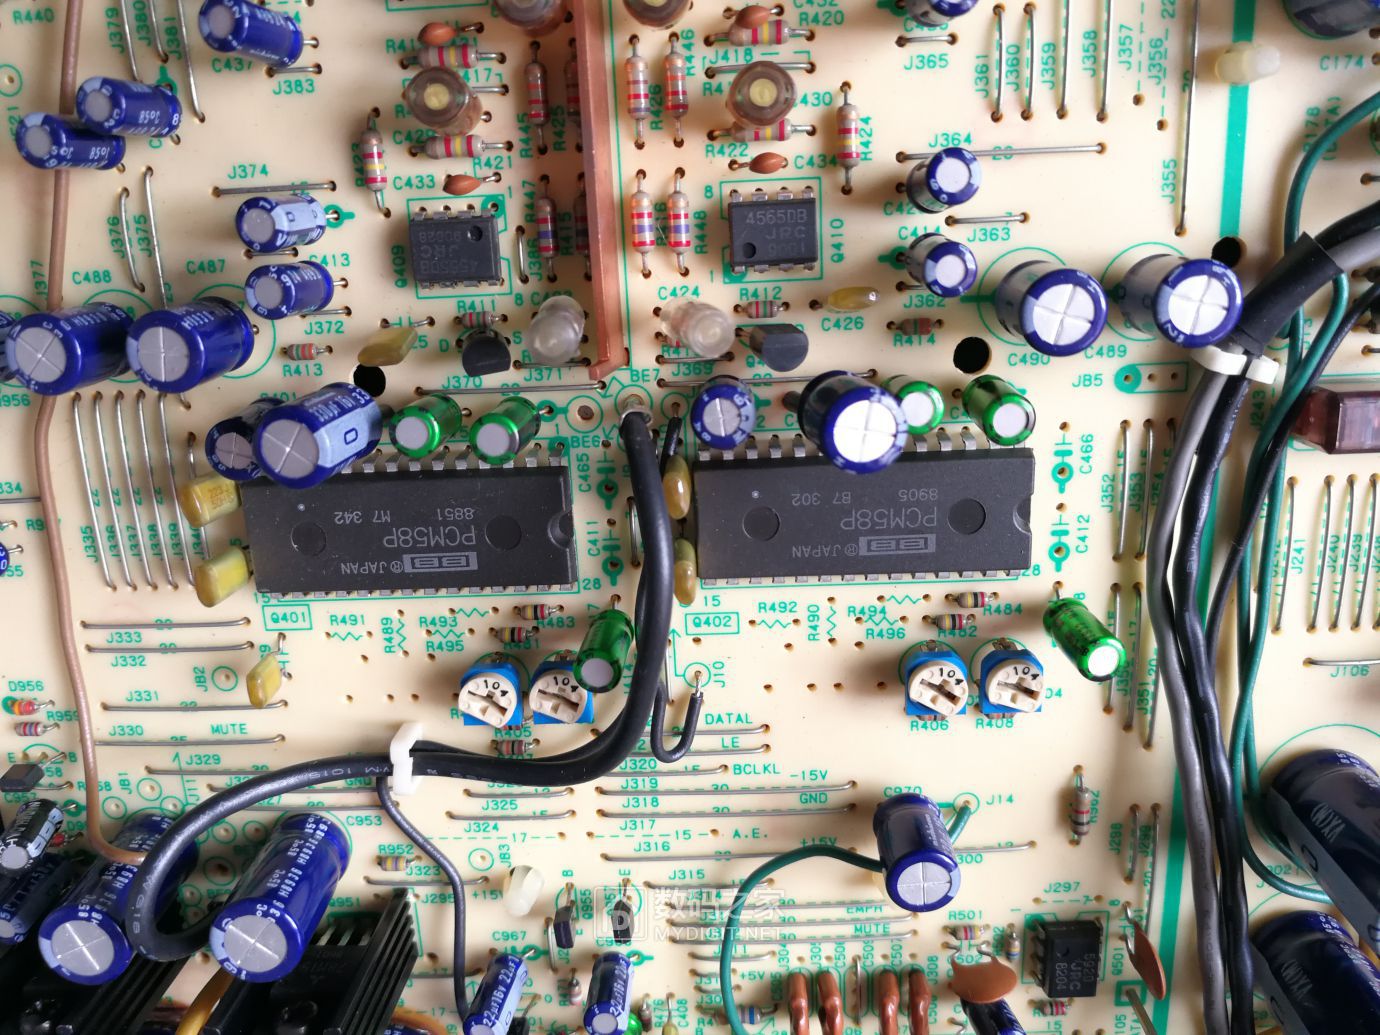 解码器PCM58，每声道一片。